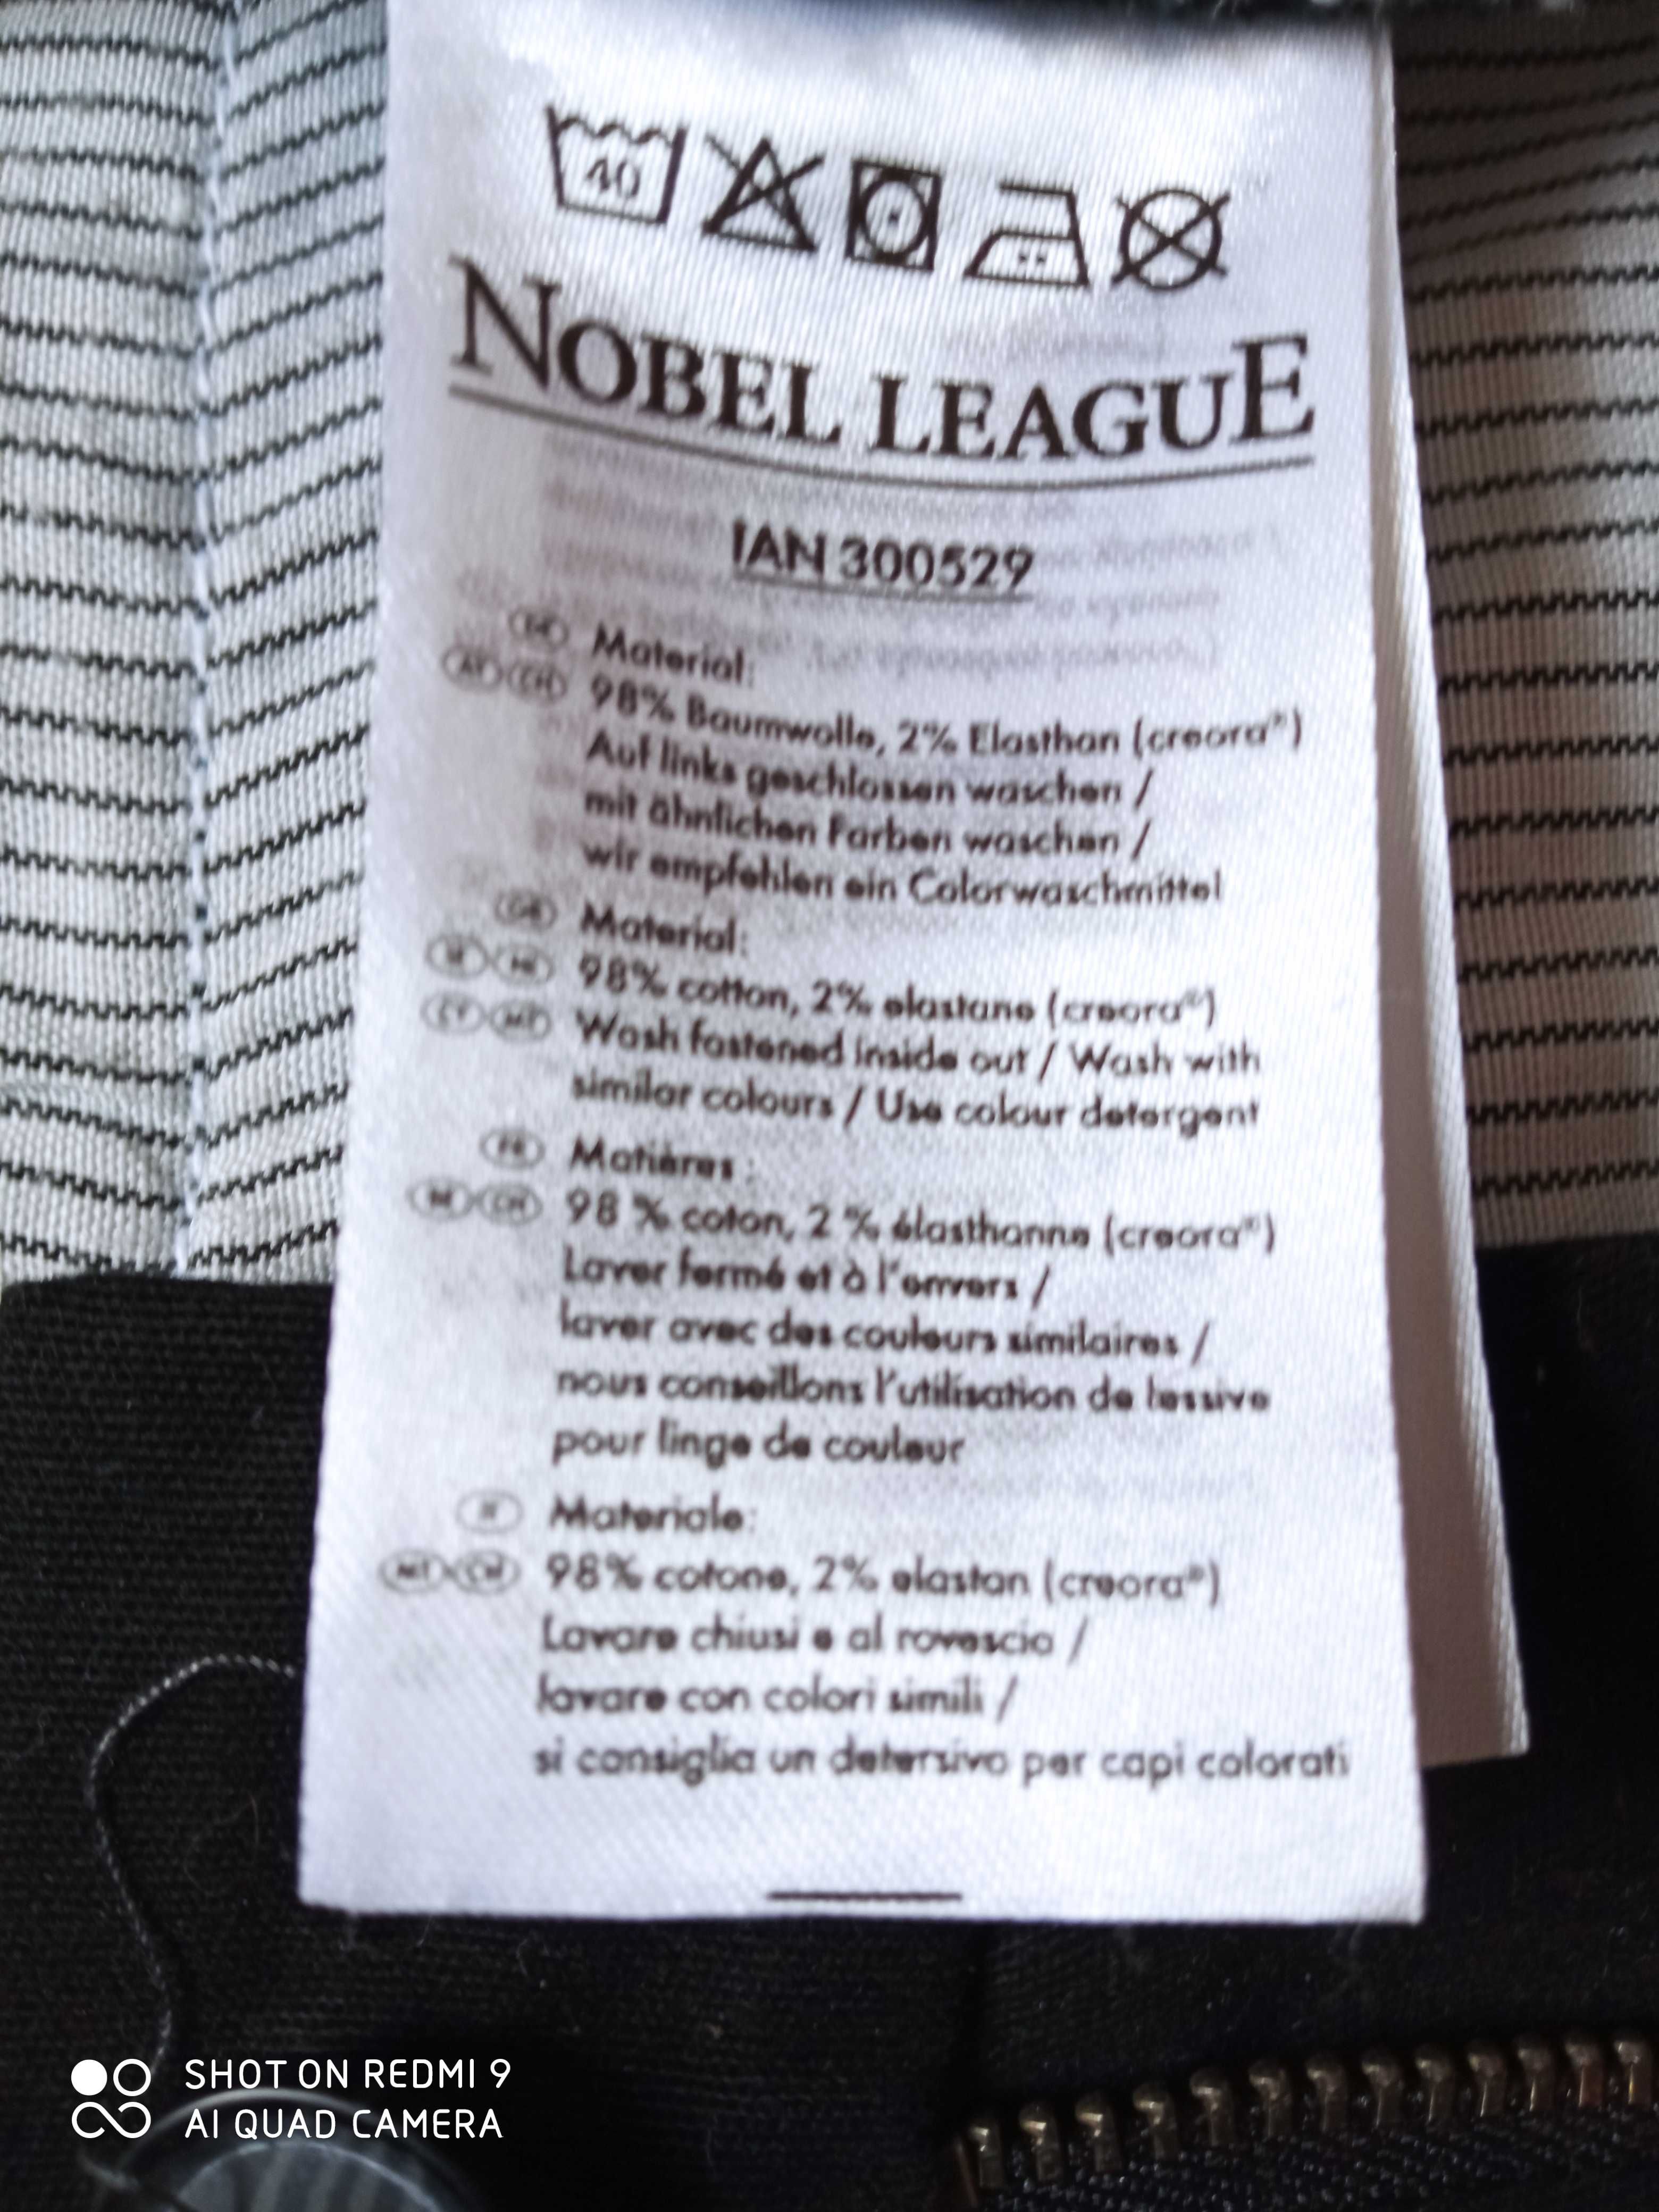 Spodnie Nobel League męskie, kolor czarny, gładkie rozmiar L54